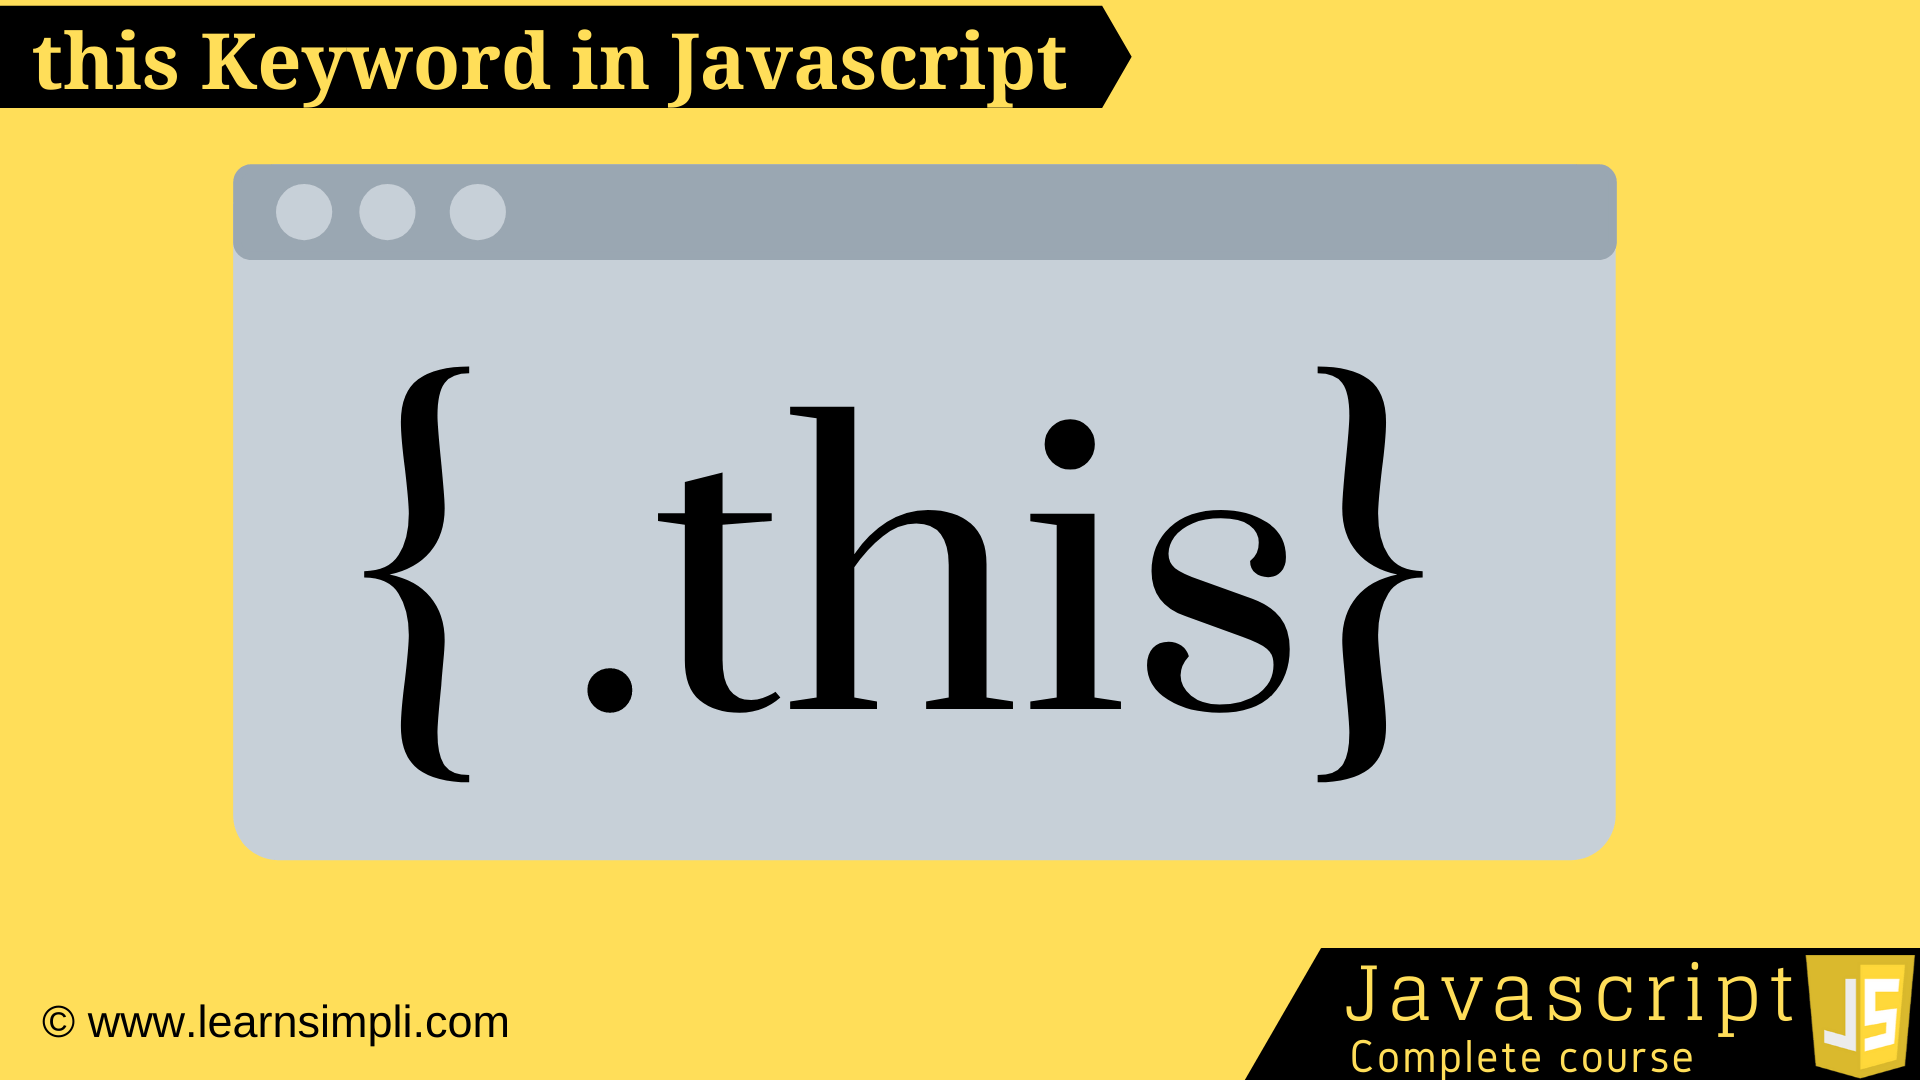 this Keyword in Javascript